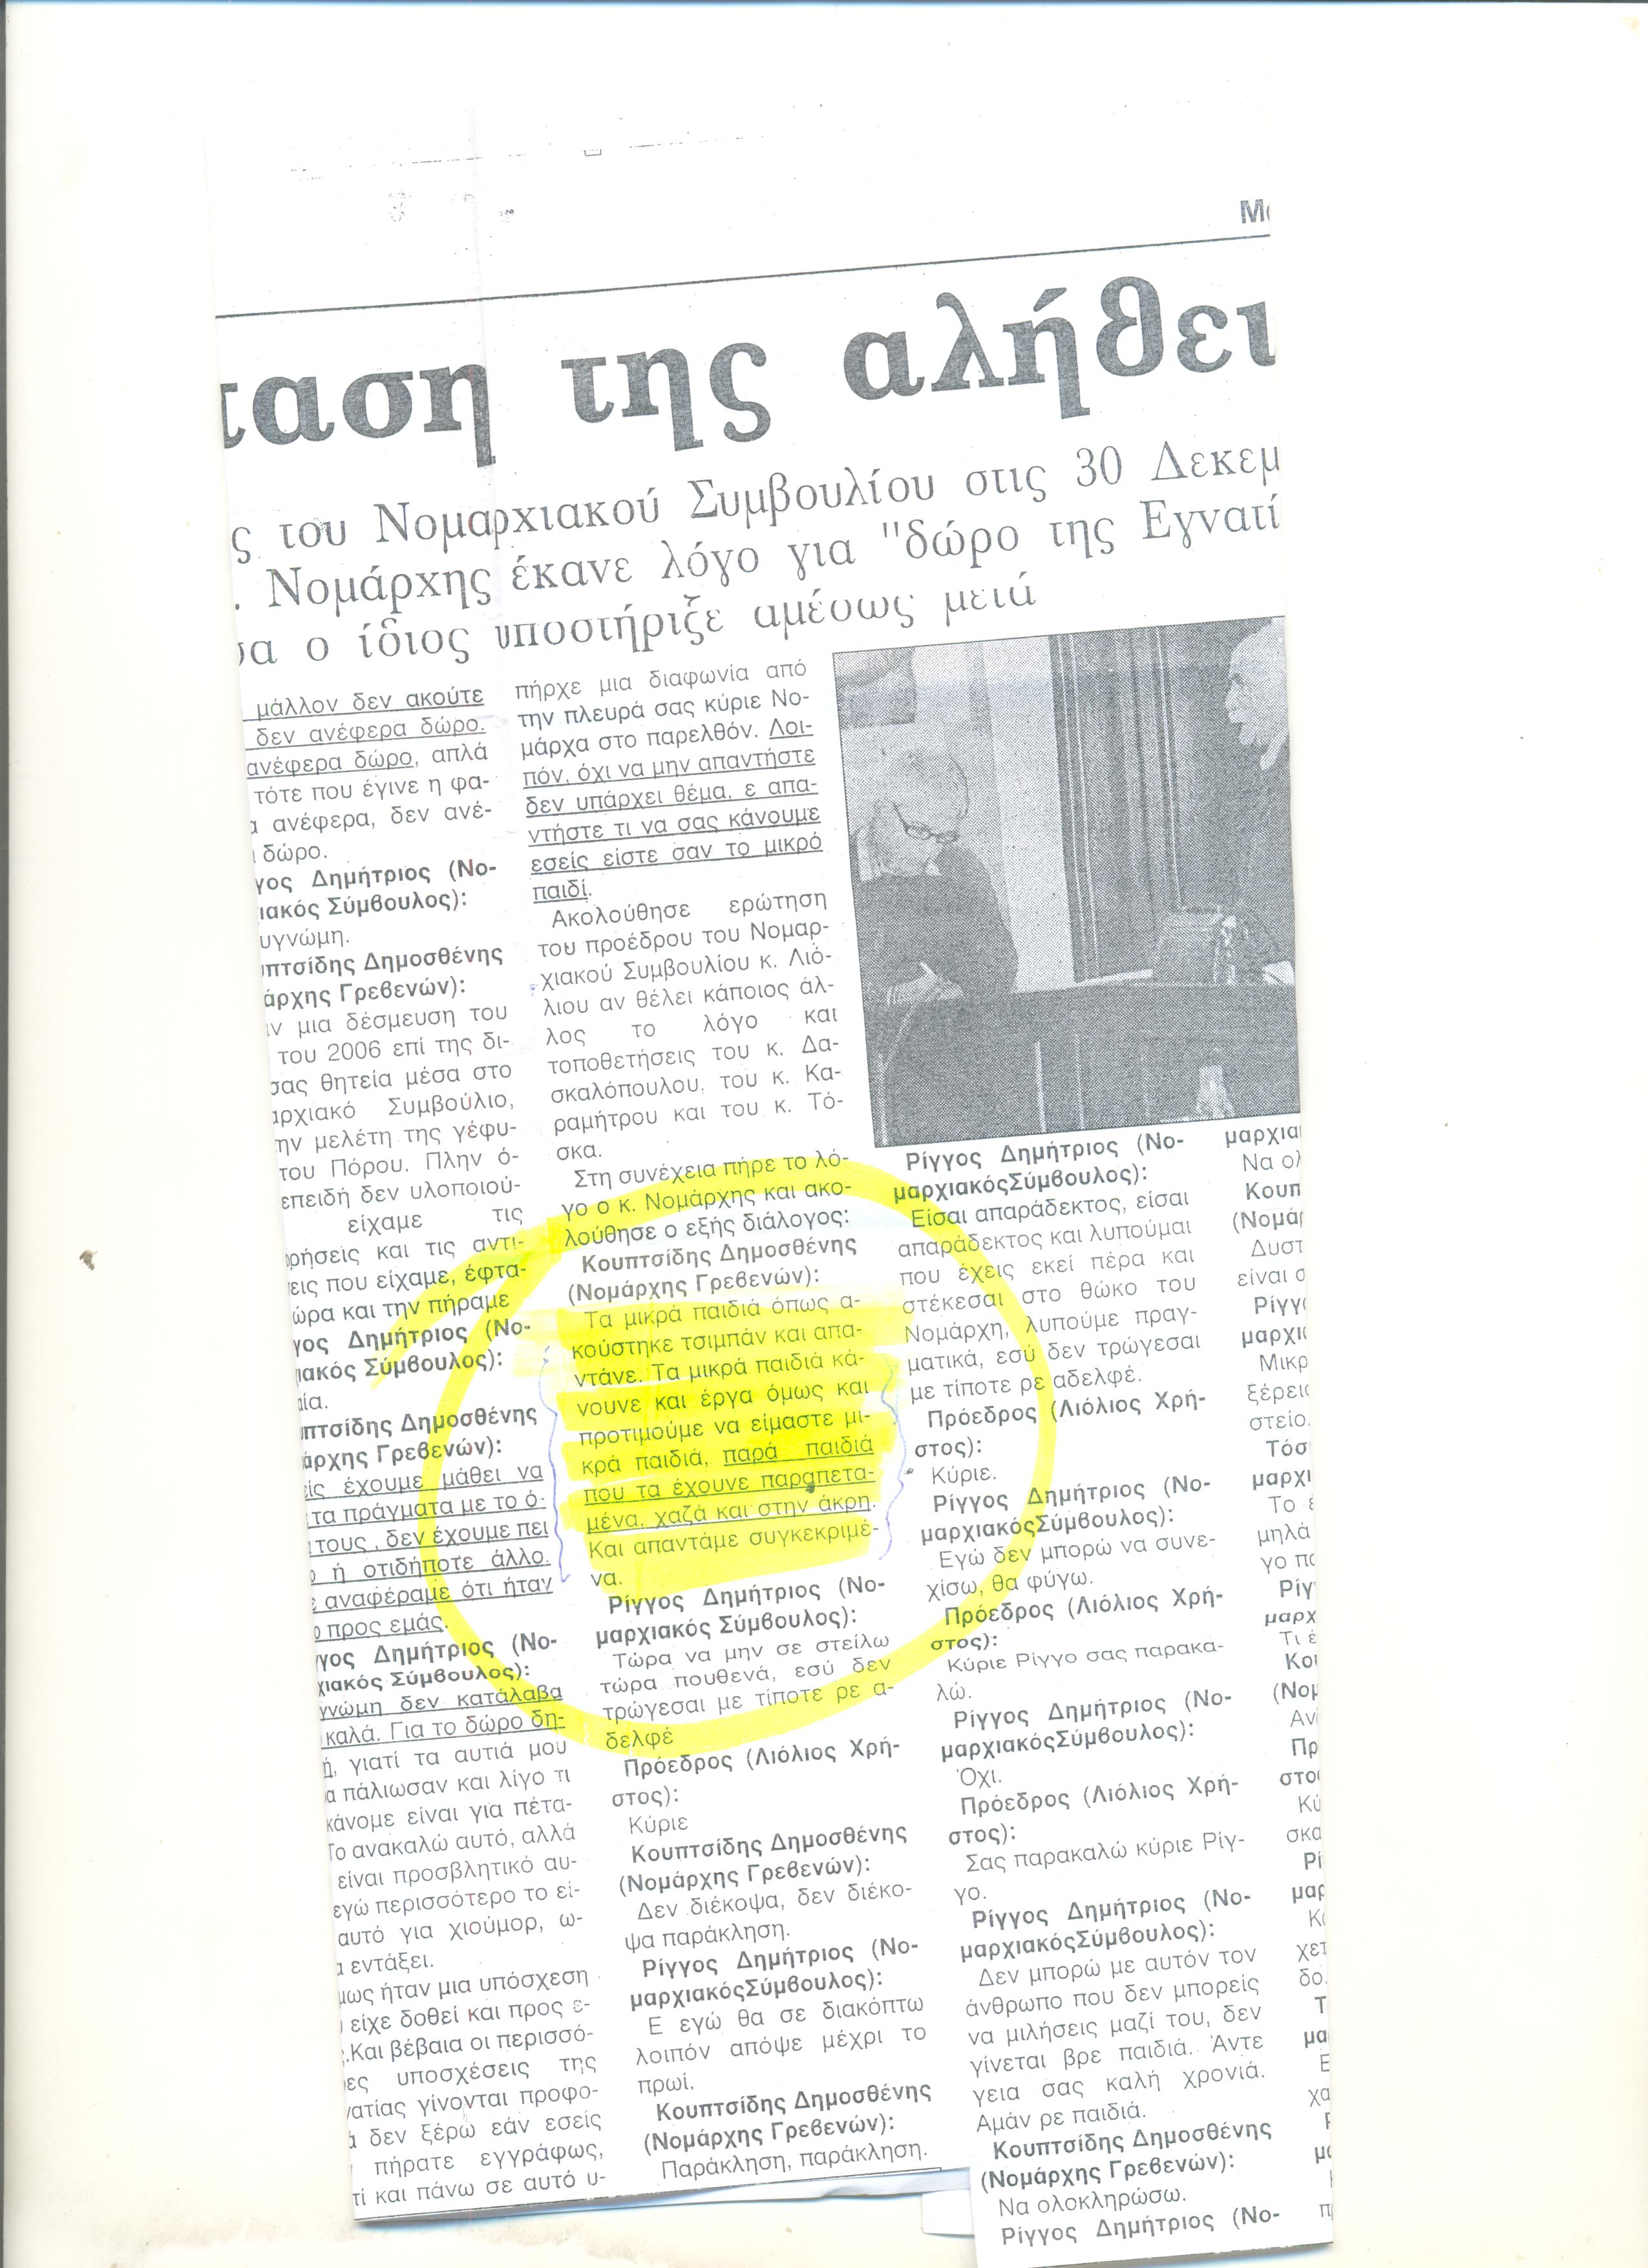 Νομαρχιακό Συμβούλιο: Αυτή ήταν η συμπεριφορά του Δ. Κουπτσίδη στον αείμνηστο Δημήτρη Ρίγγο: Διαβάστε την μεγάλη προσβολή… στο πρόσωπό του!!!